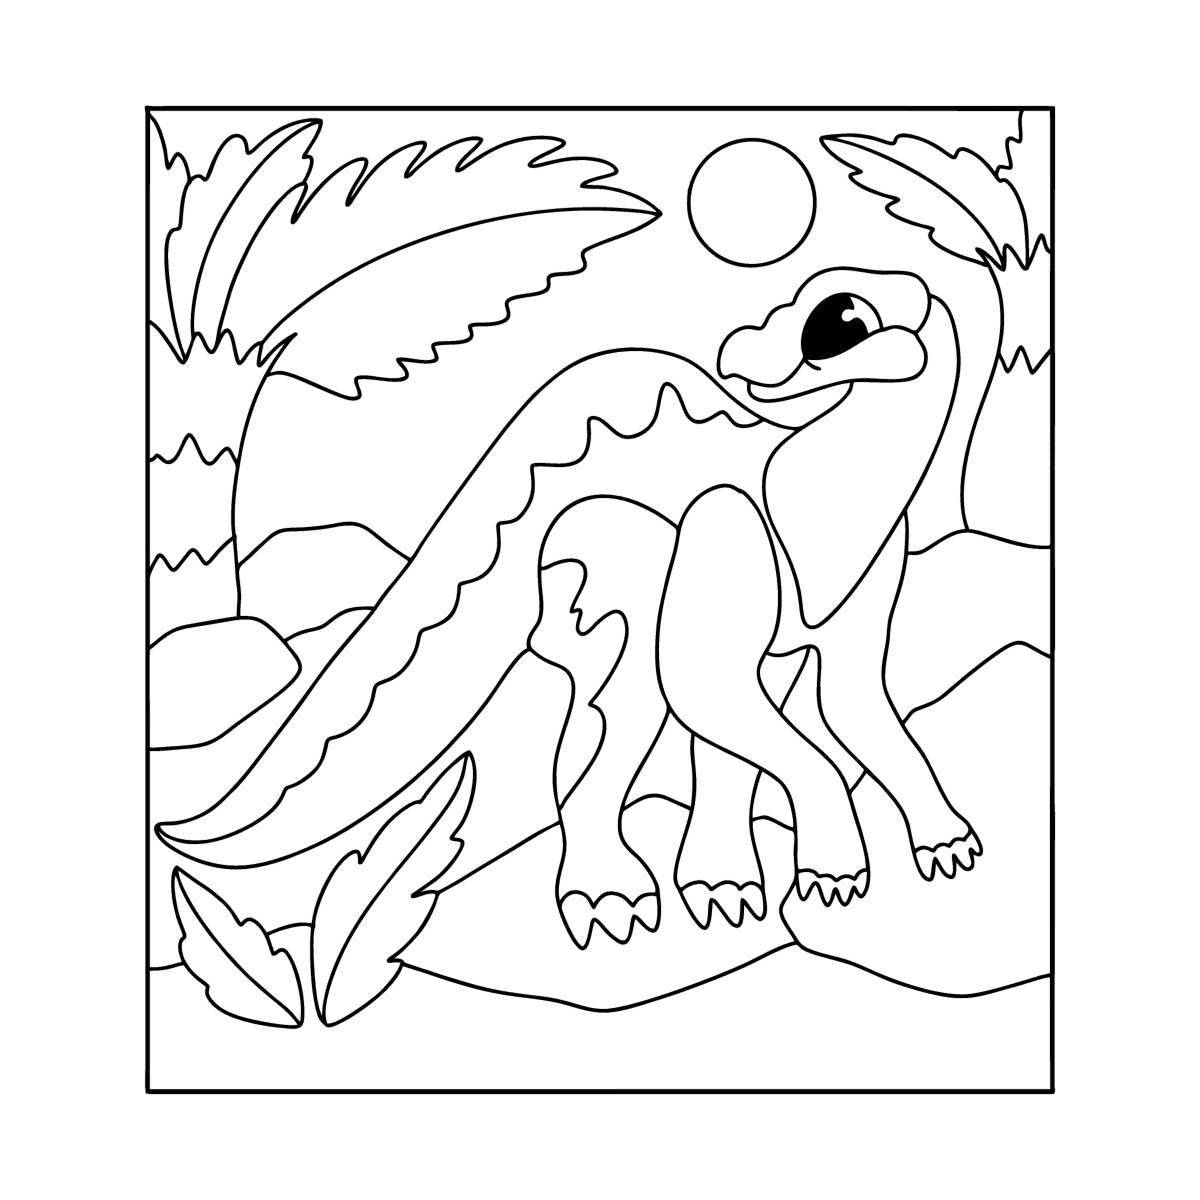 Юмористическая раскраска игуанодона